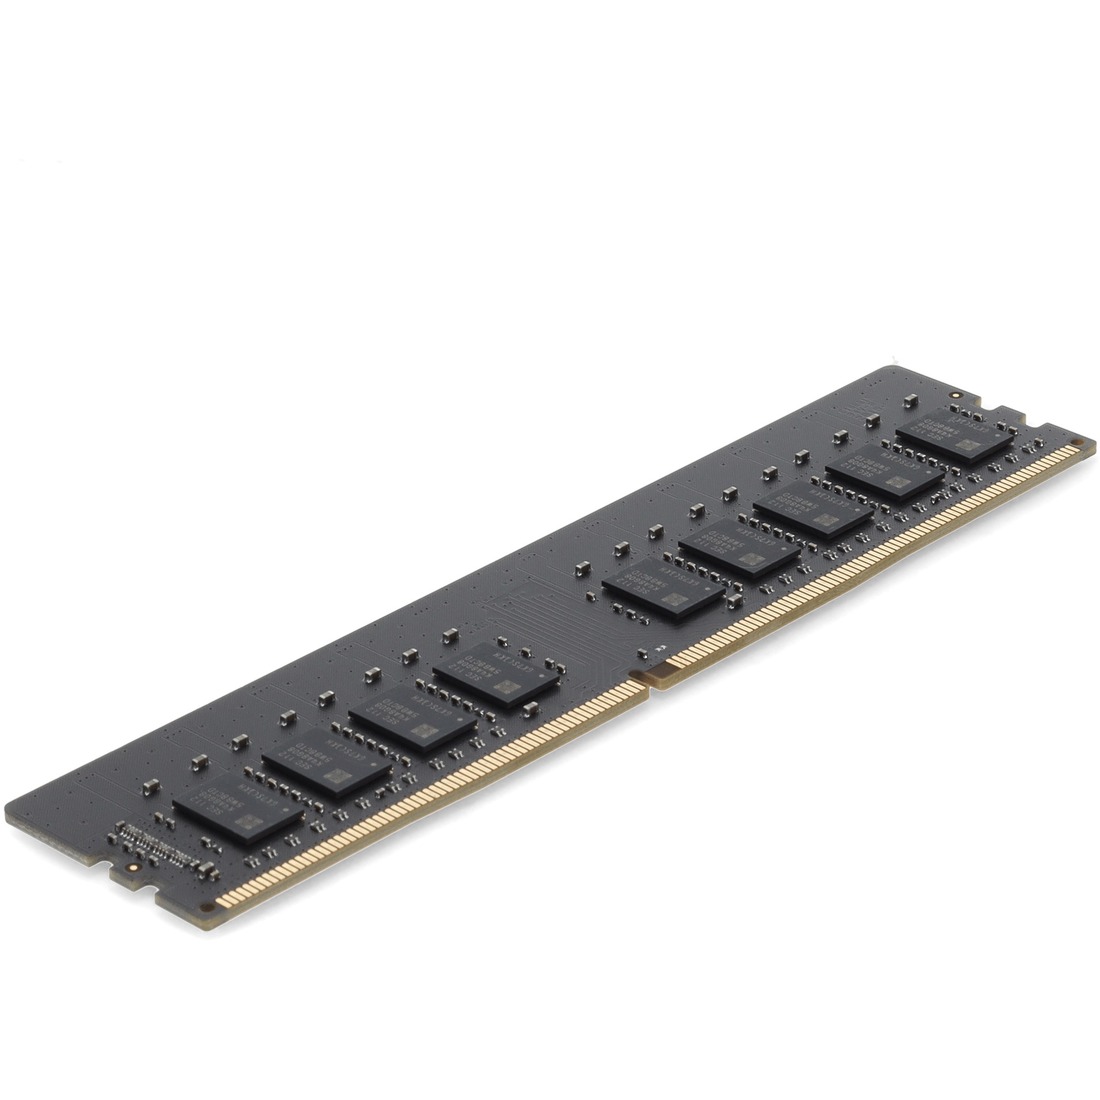 AddOn 16GB DDR4 SDRAM Memory Module - 16 GB (1 x 16GB) - DDR4-2666 